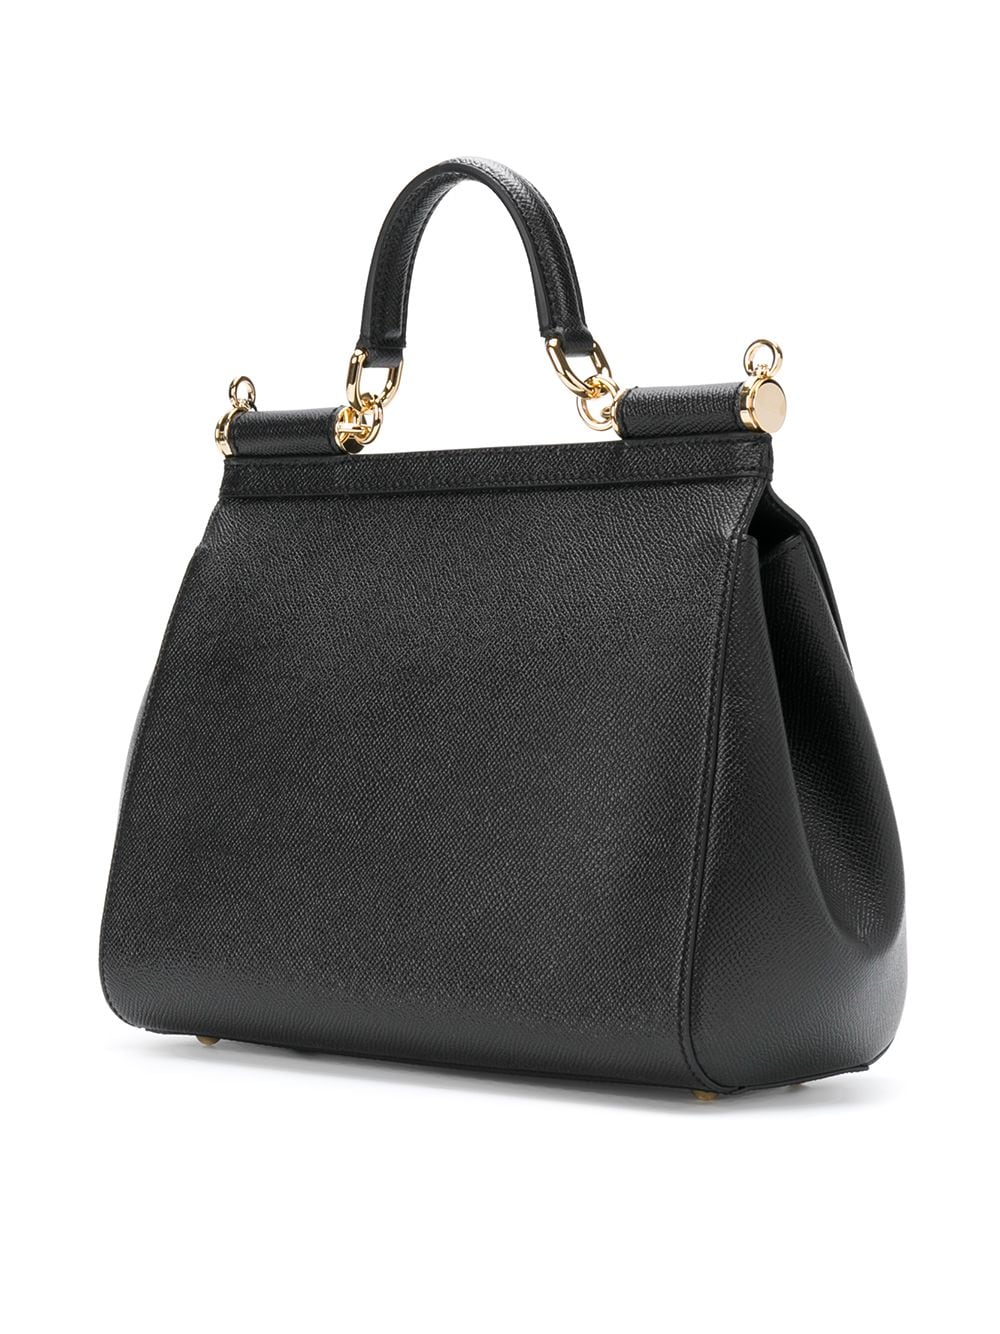 حقيبة سيسلي متوسطة من جلد العجل الأسود مع تفاصيل معدنية، 21x26x12 سم